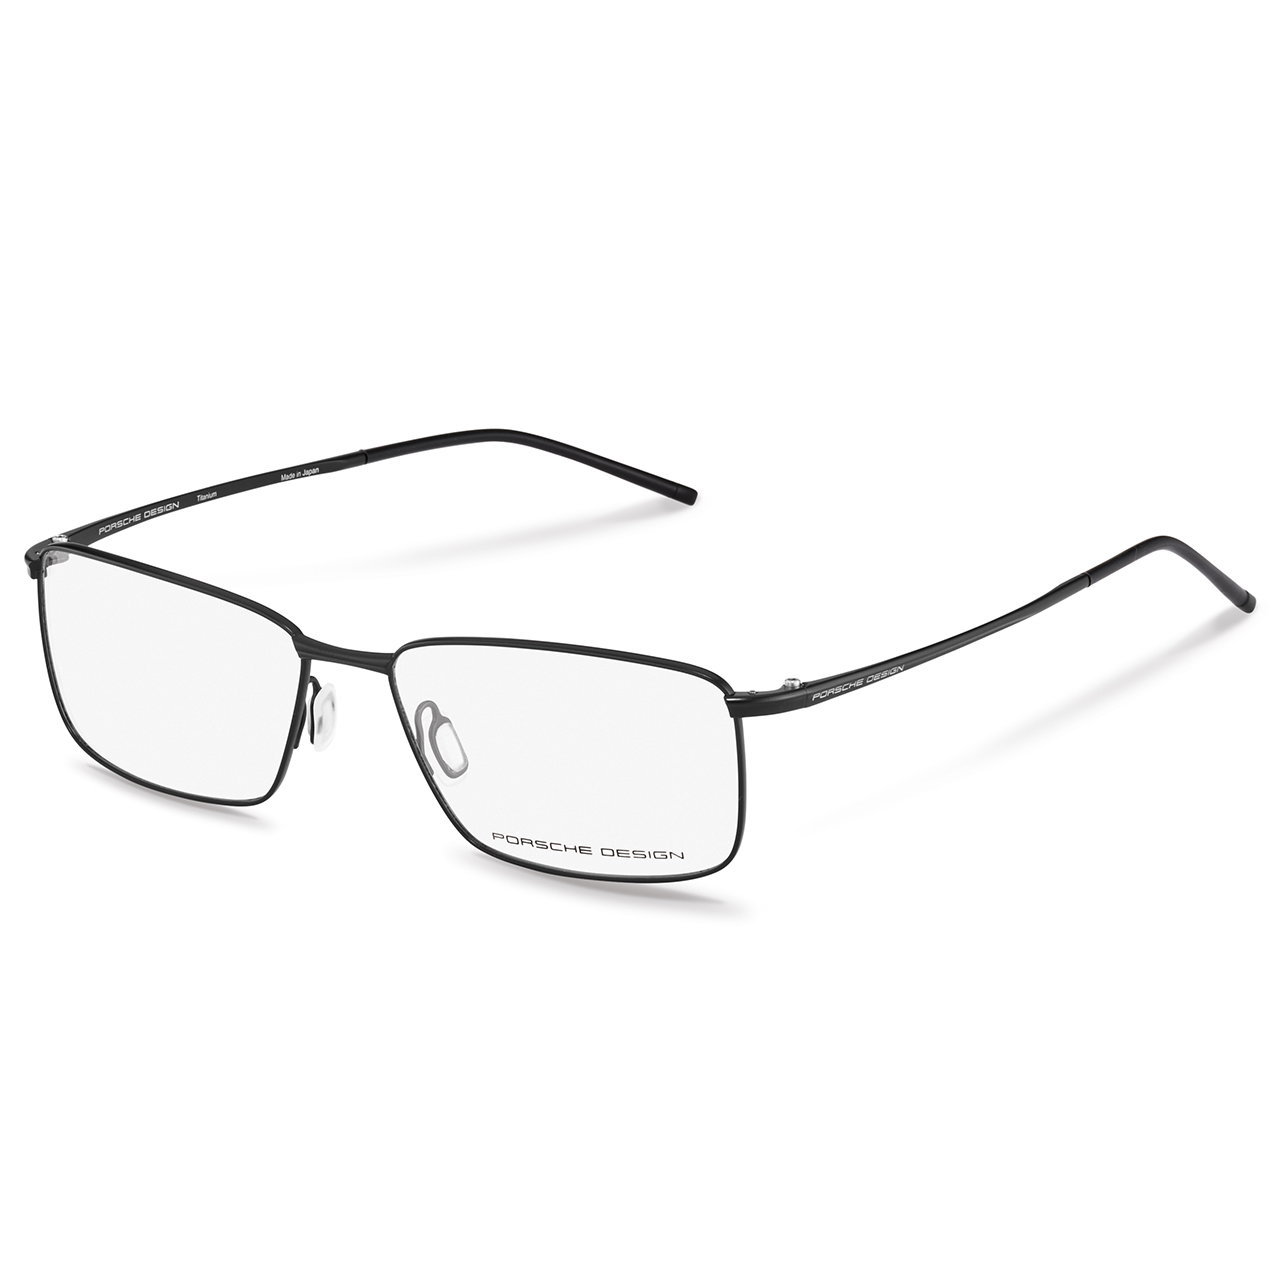 Correction Frames P´8364 - Titanium-Frame Glasses - High-Quality ...